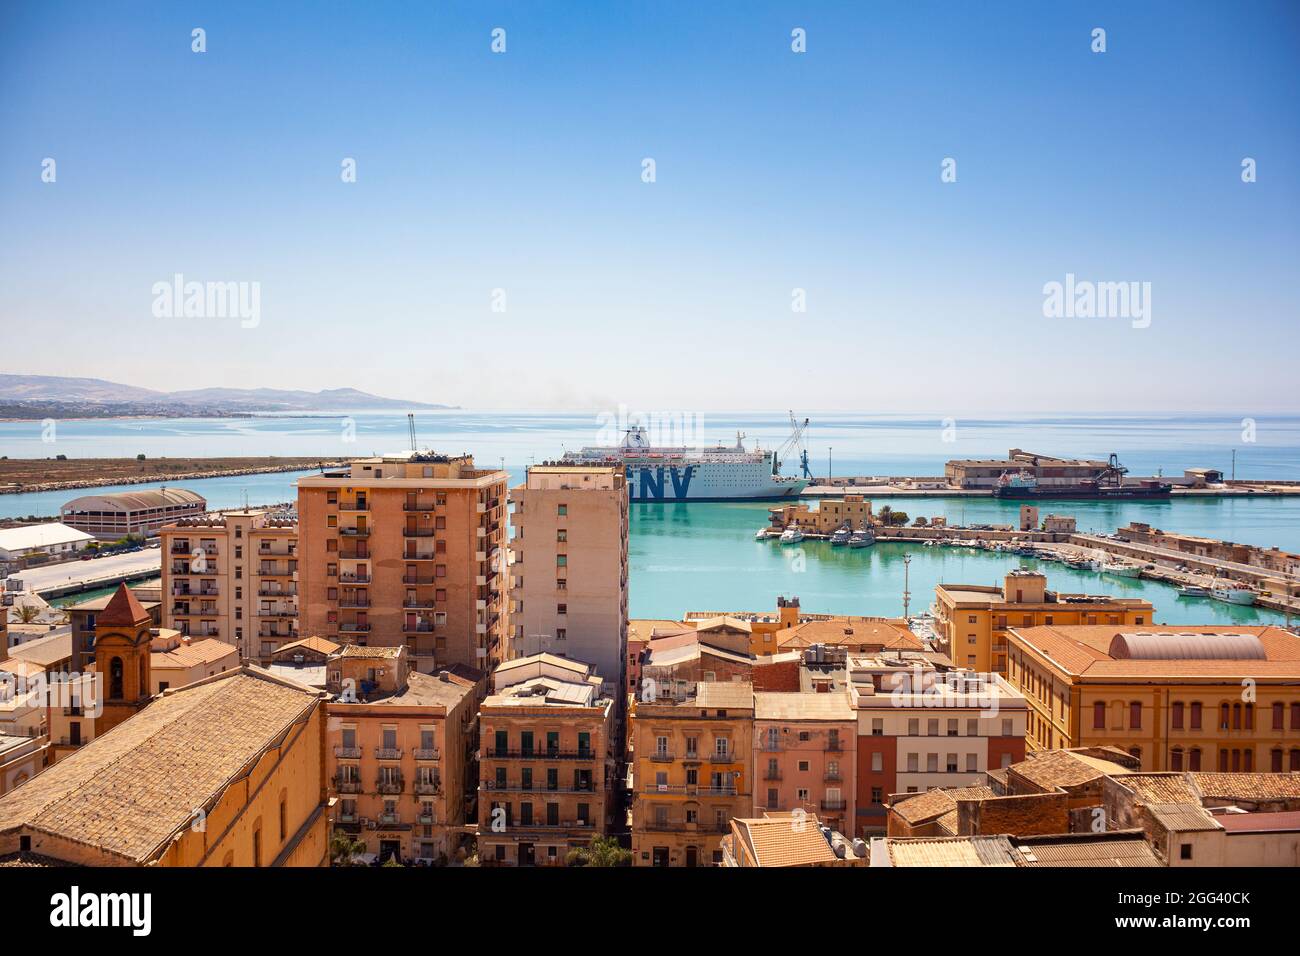 Porto Empedocle, Italia - Luglio 22: Vista della nave di quarantena GNV Allegra parcheggiata nel molo di porto Empedocle il 22 Luglio 2021 Foto Stock